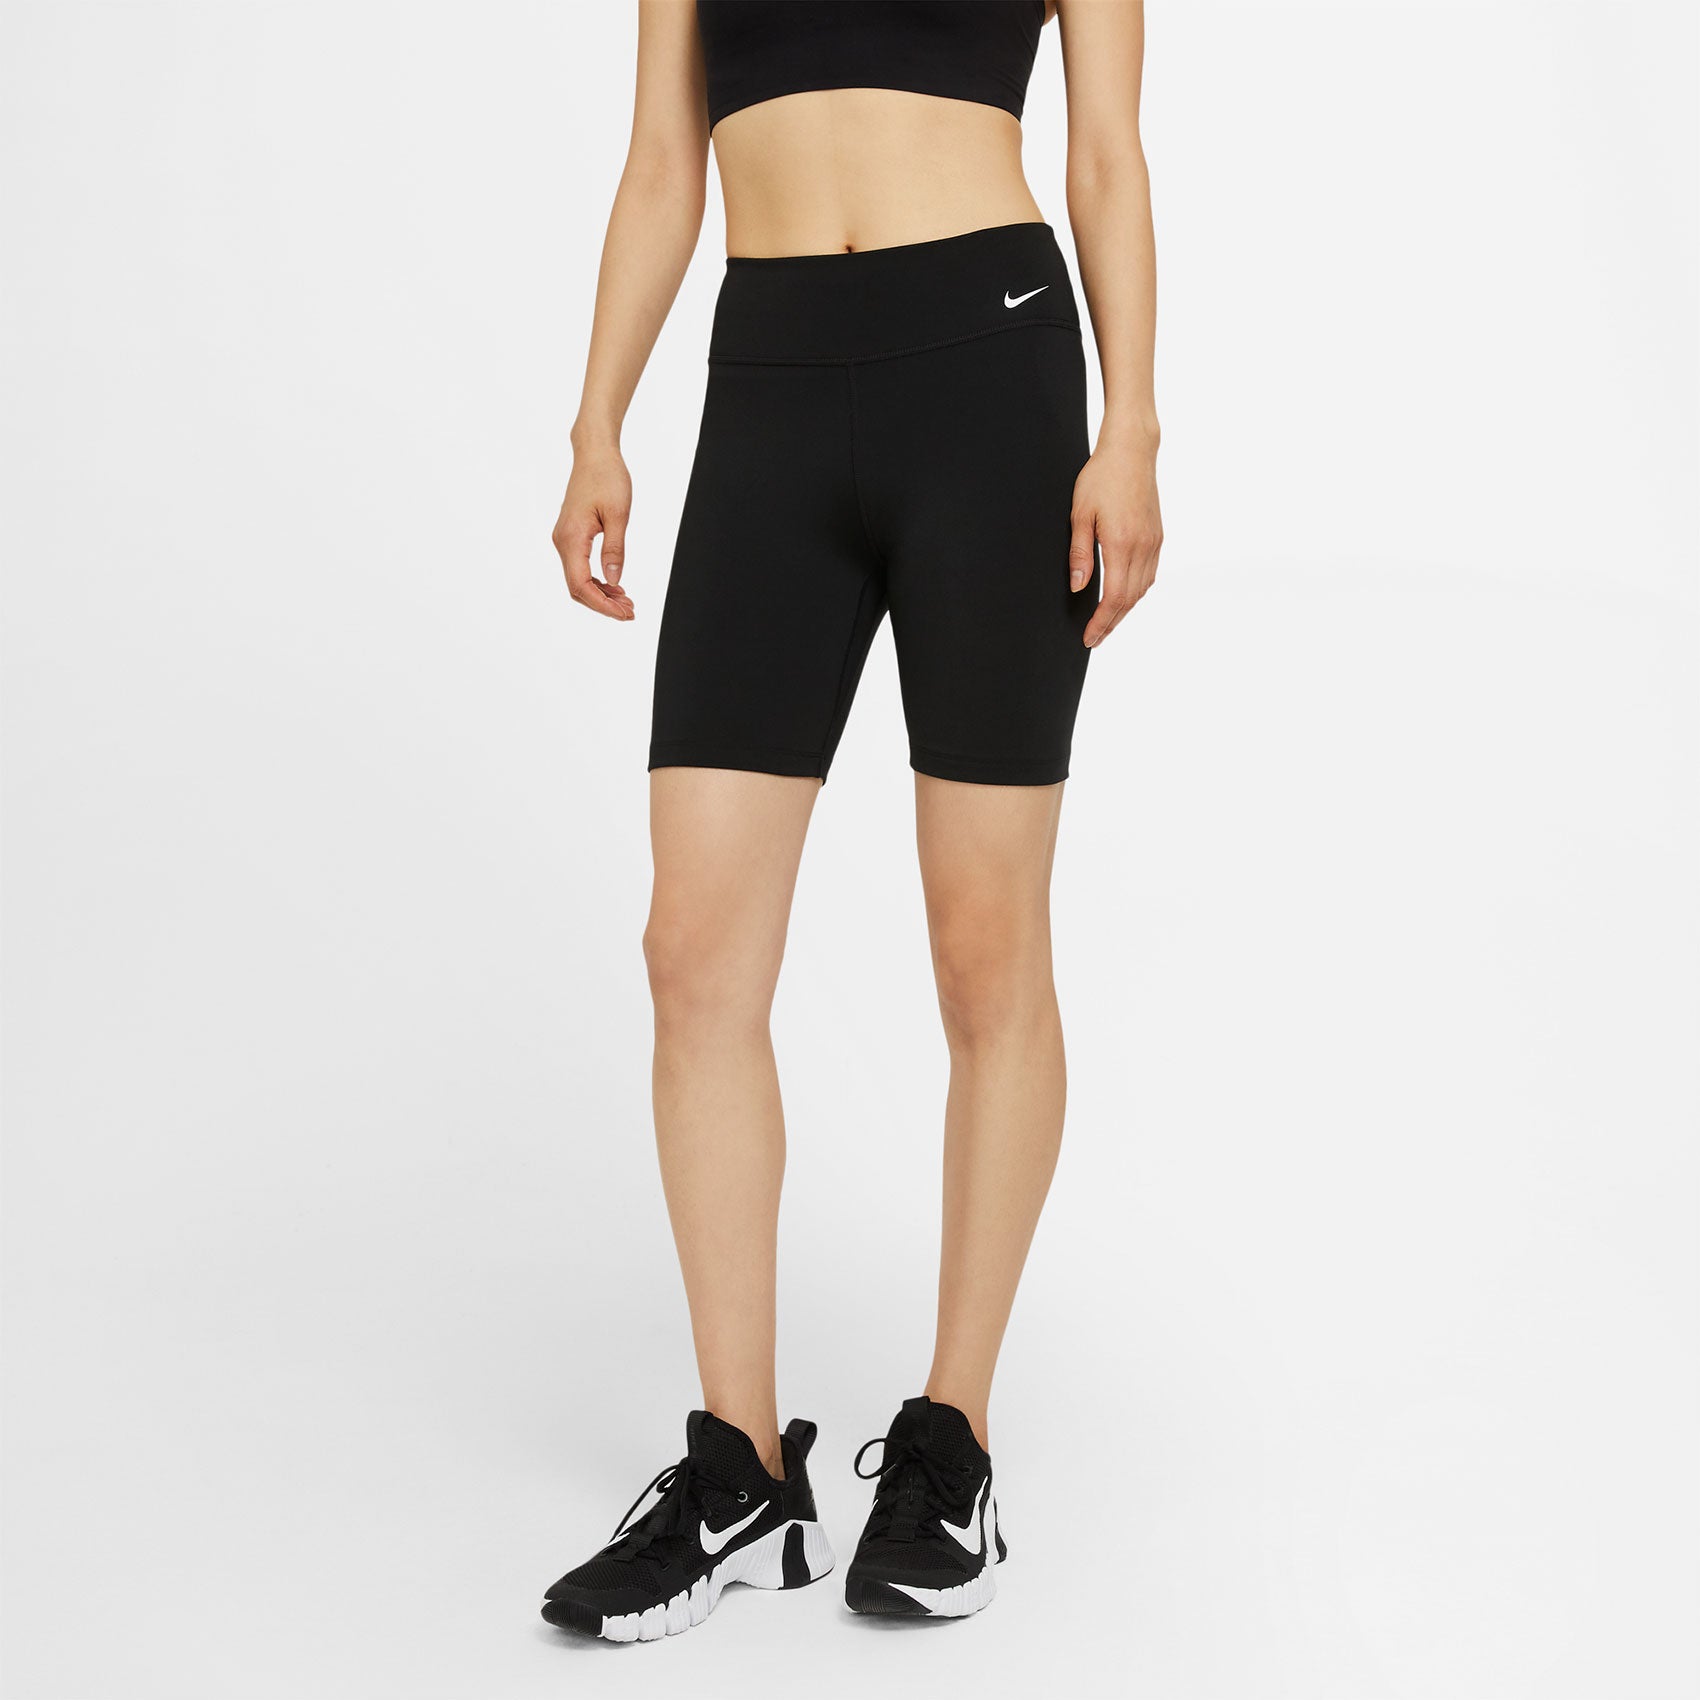 Women's Nike One 7" Short - Black/White Gazelle